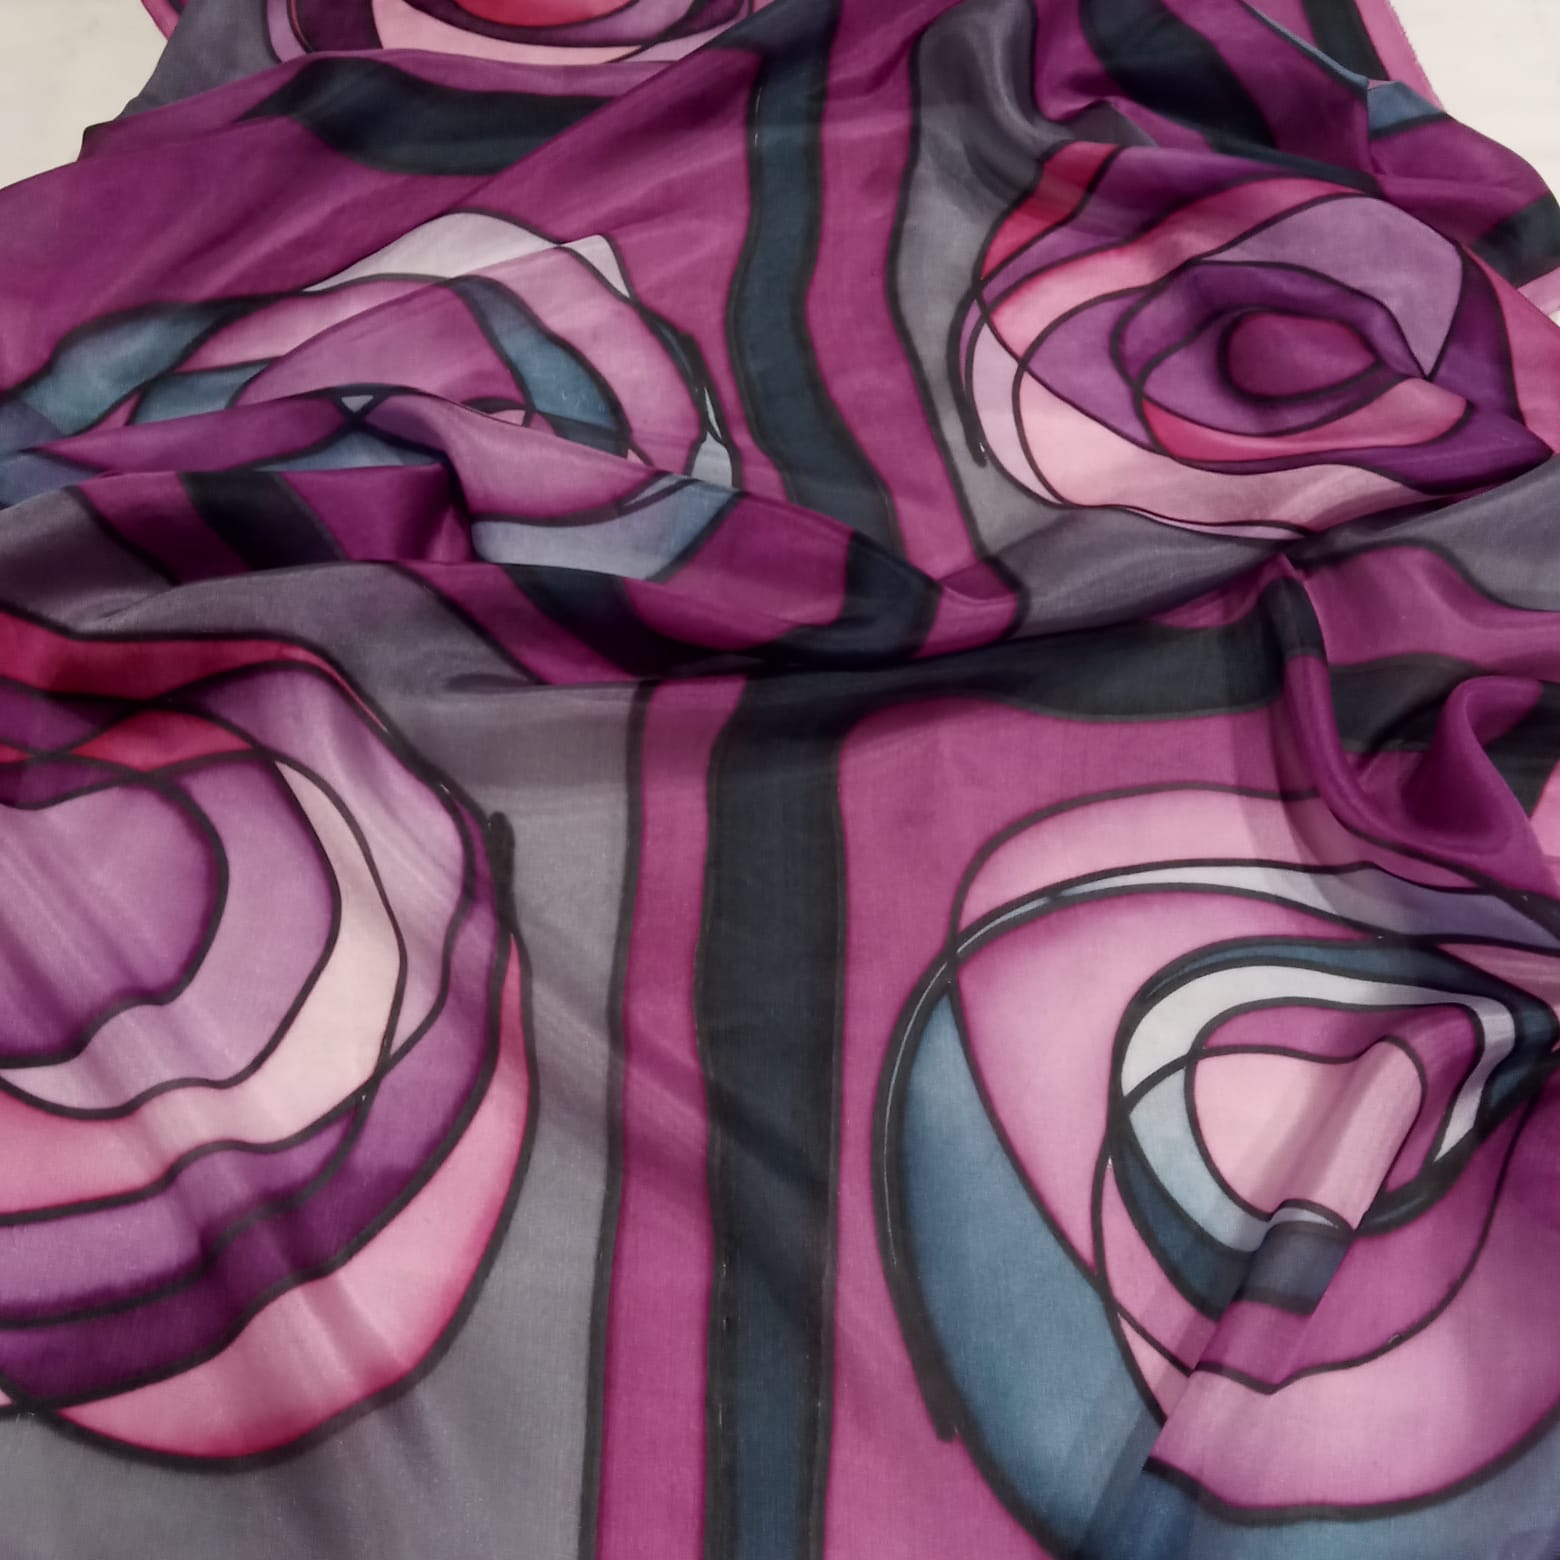 Echarpe de lã e seda com estampa xadrez (Rosa Chiclete Claro)